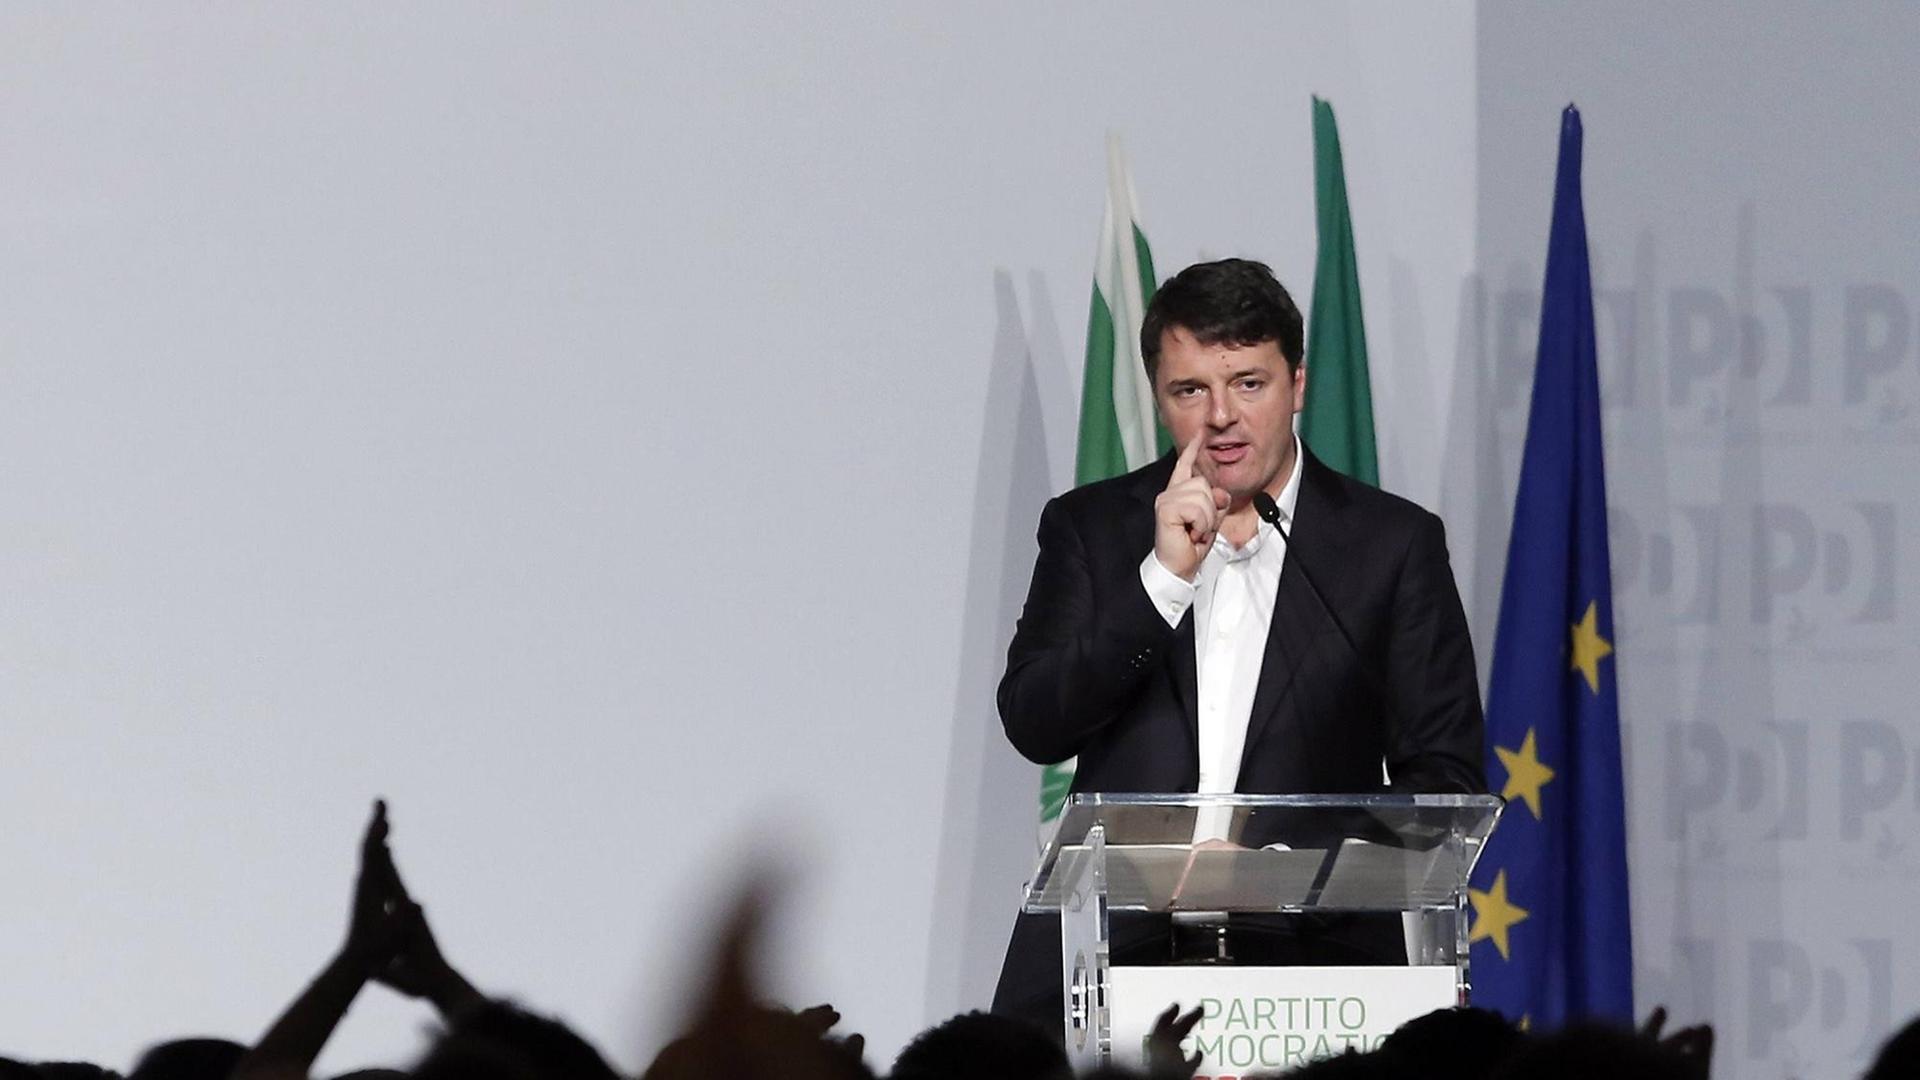 Matteo Renzi bei einer Veranstaltung der Demokratischen Partei in Rom (19.02.17)